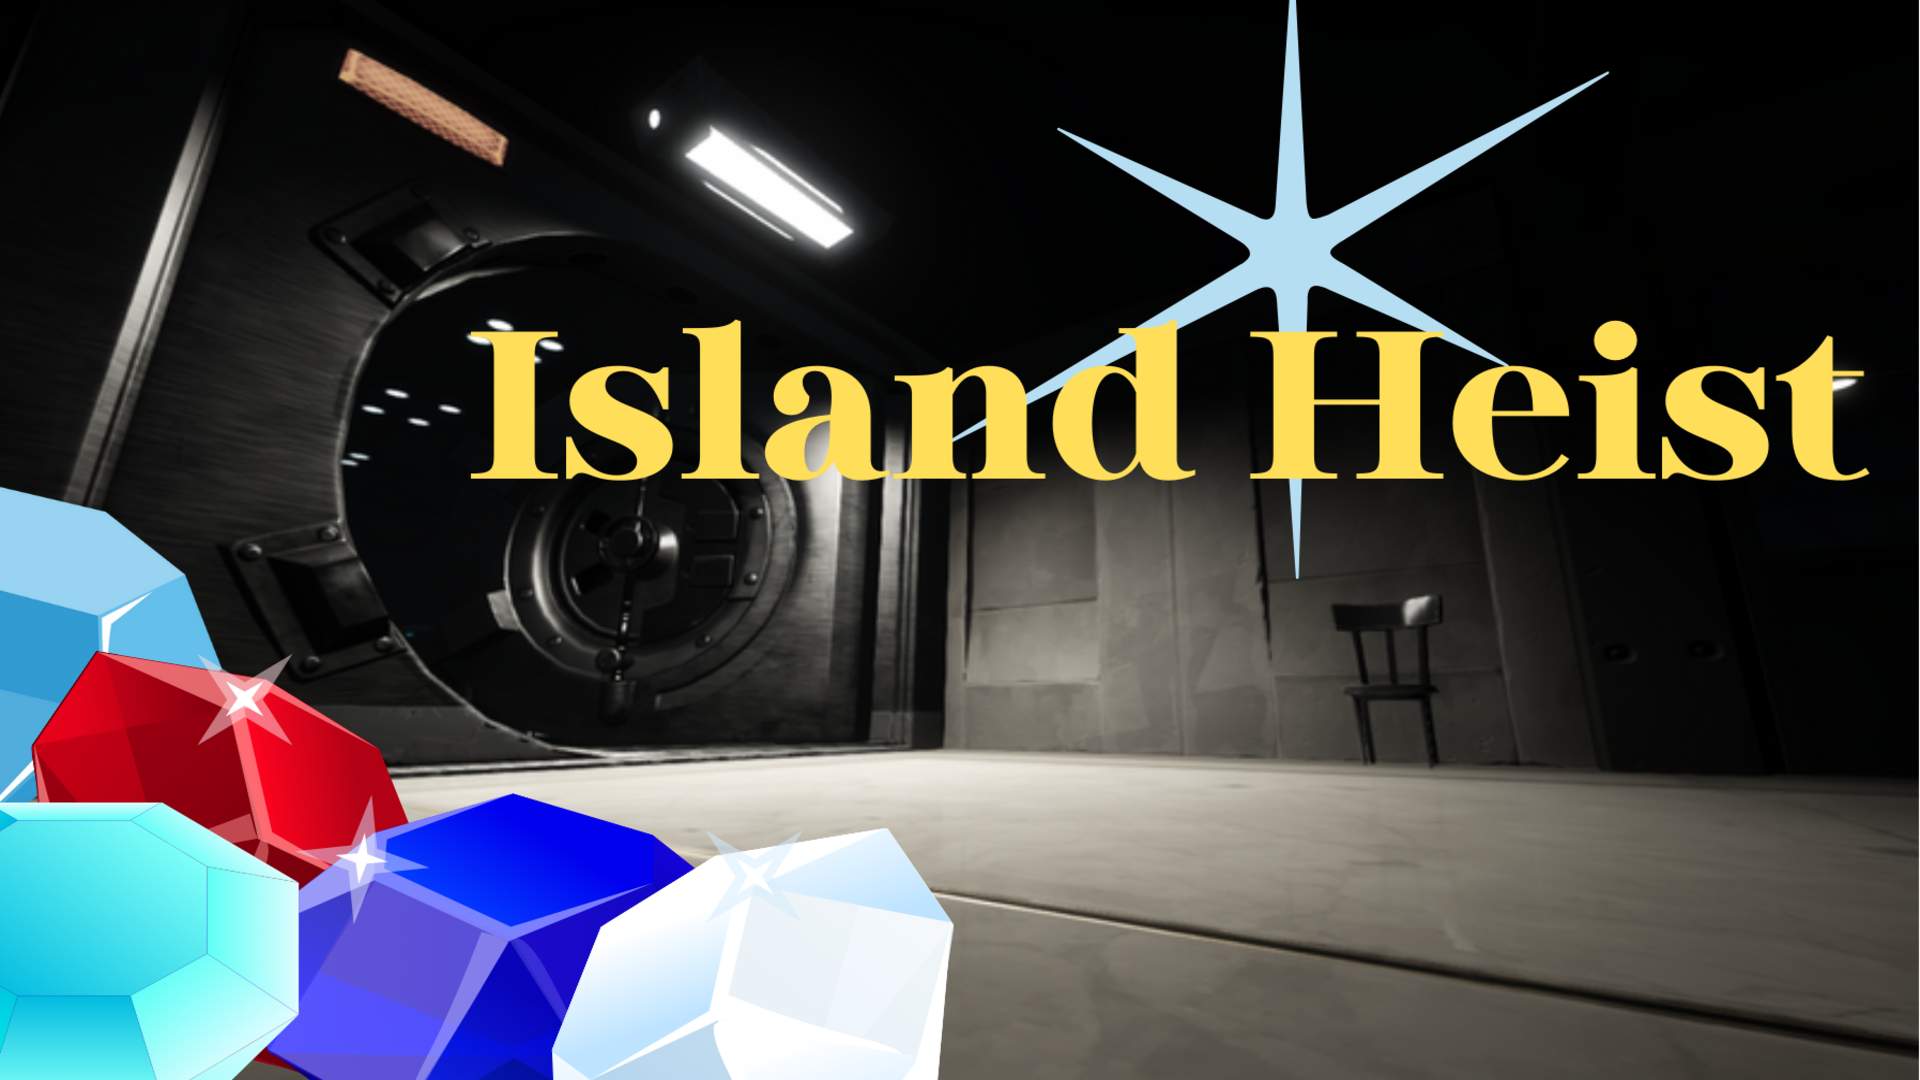 Island Heist